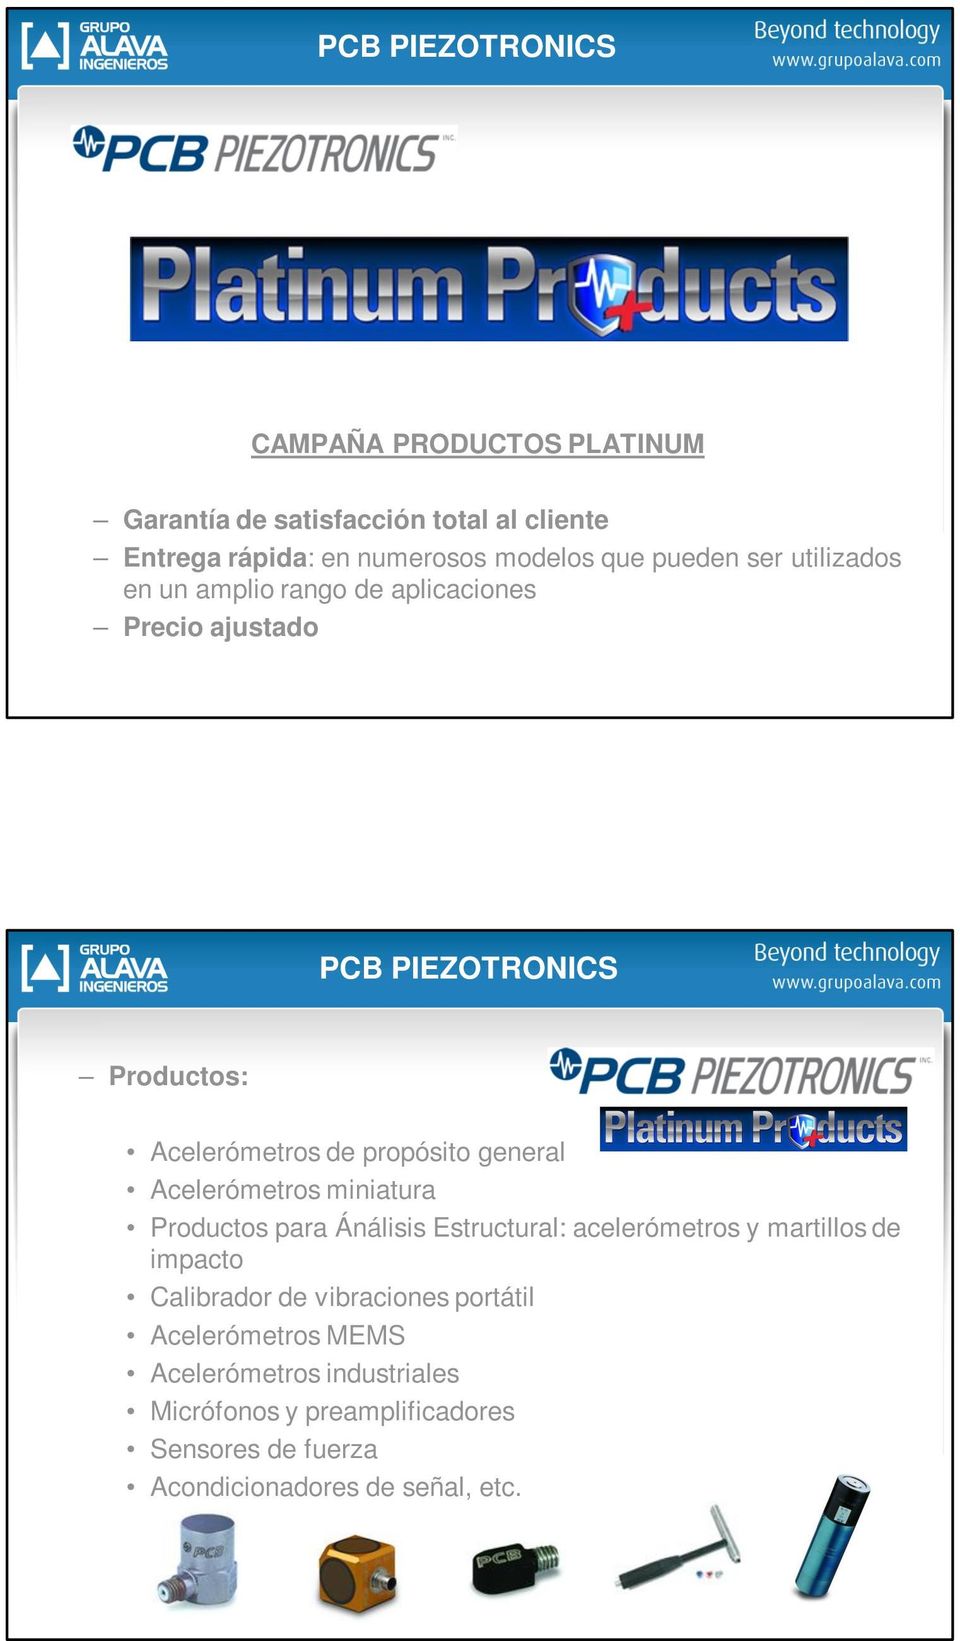 Acelerómetros miniatura PCB PIEZOTRONICS Productos para Ánálisis Estructural: acelerómetros y martillos de impacto Calibrador de